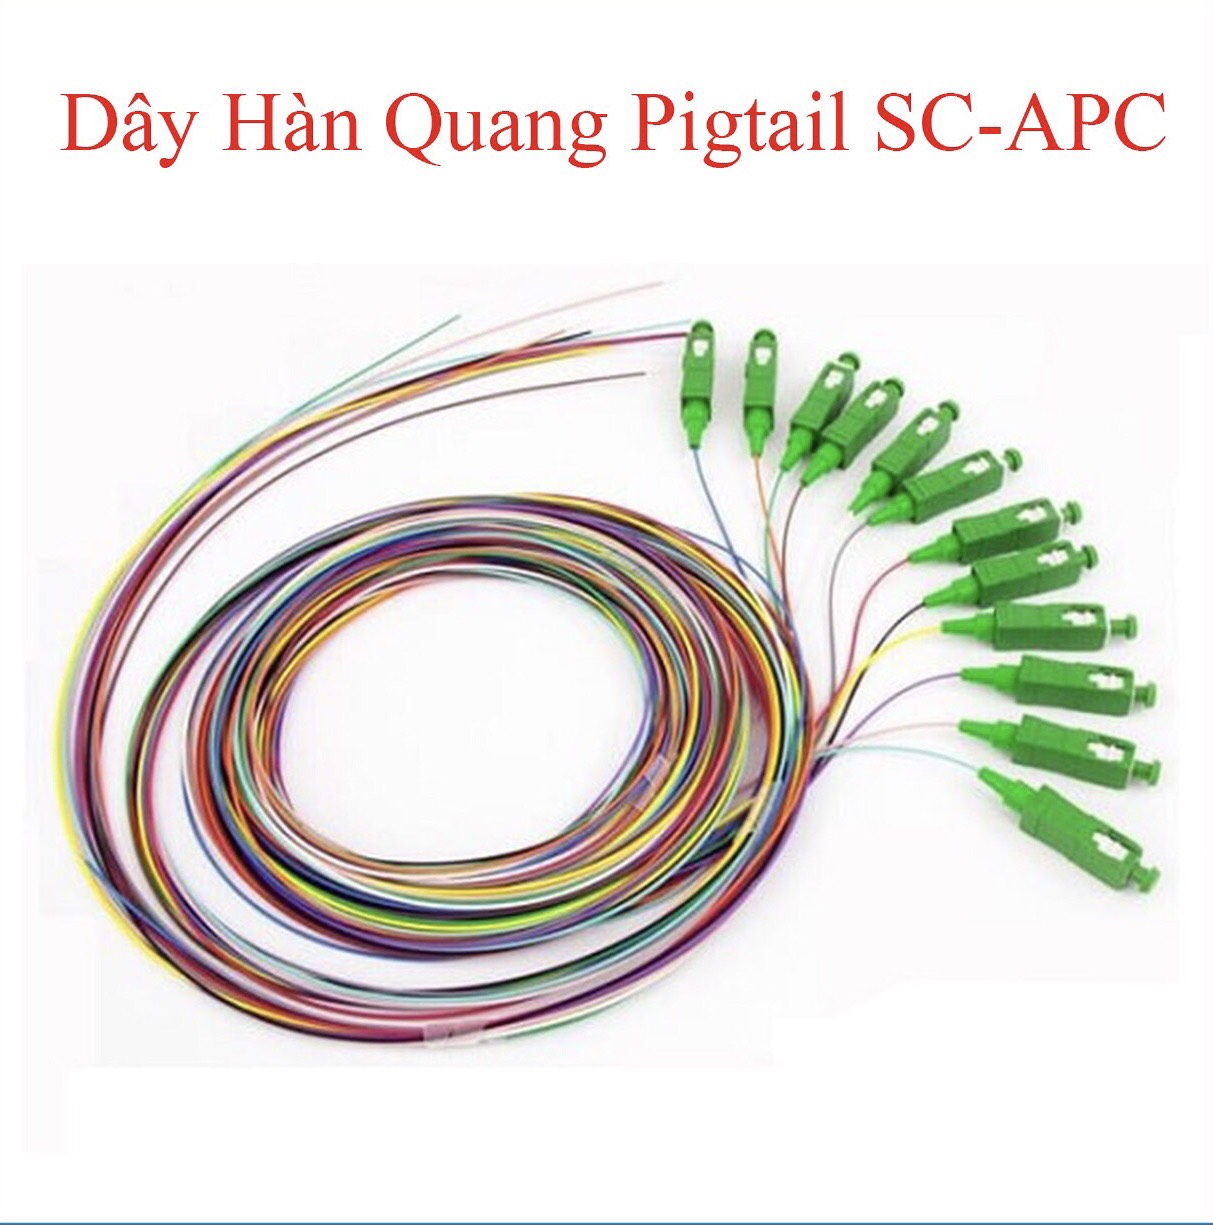 Dây Hàn Quang Pigtail SC/APC